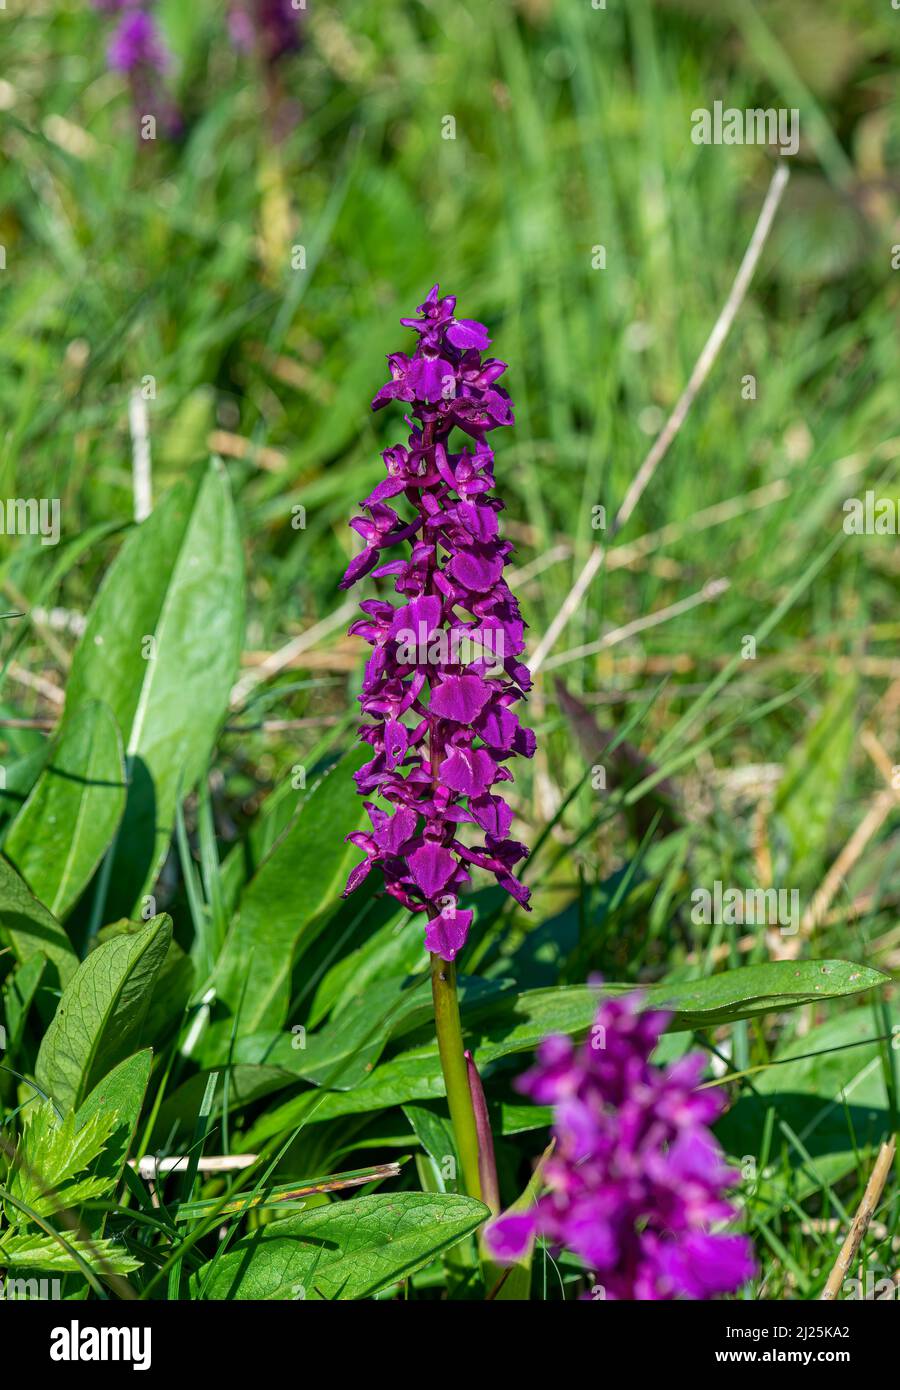 Orquídeas moradas tempranas, Cressbrook Dale, Peak District, Derbyshire, Reino Unido Foto de stock